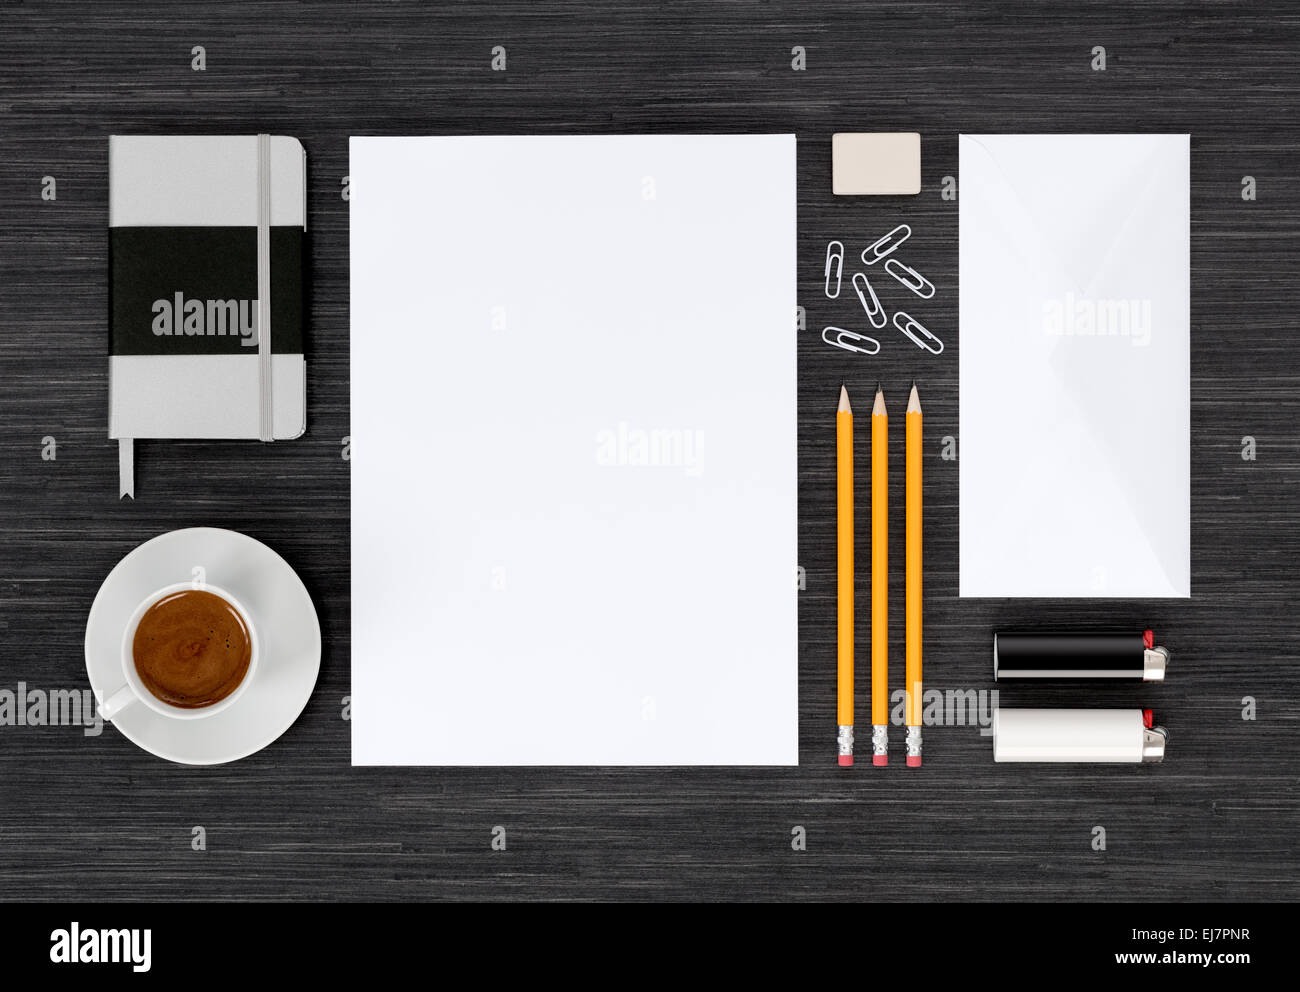 Identità del marchio mock up con modelli per la progettazione di presentazione o di portafoglio per la tavola nera. Foto Stock